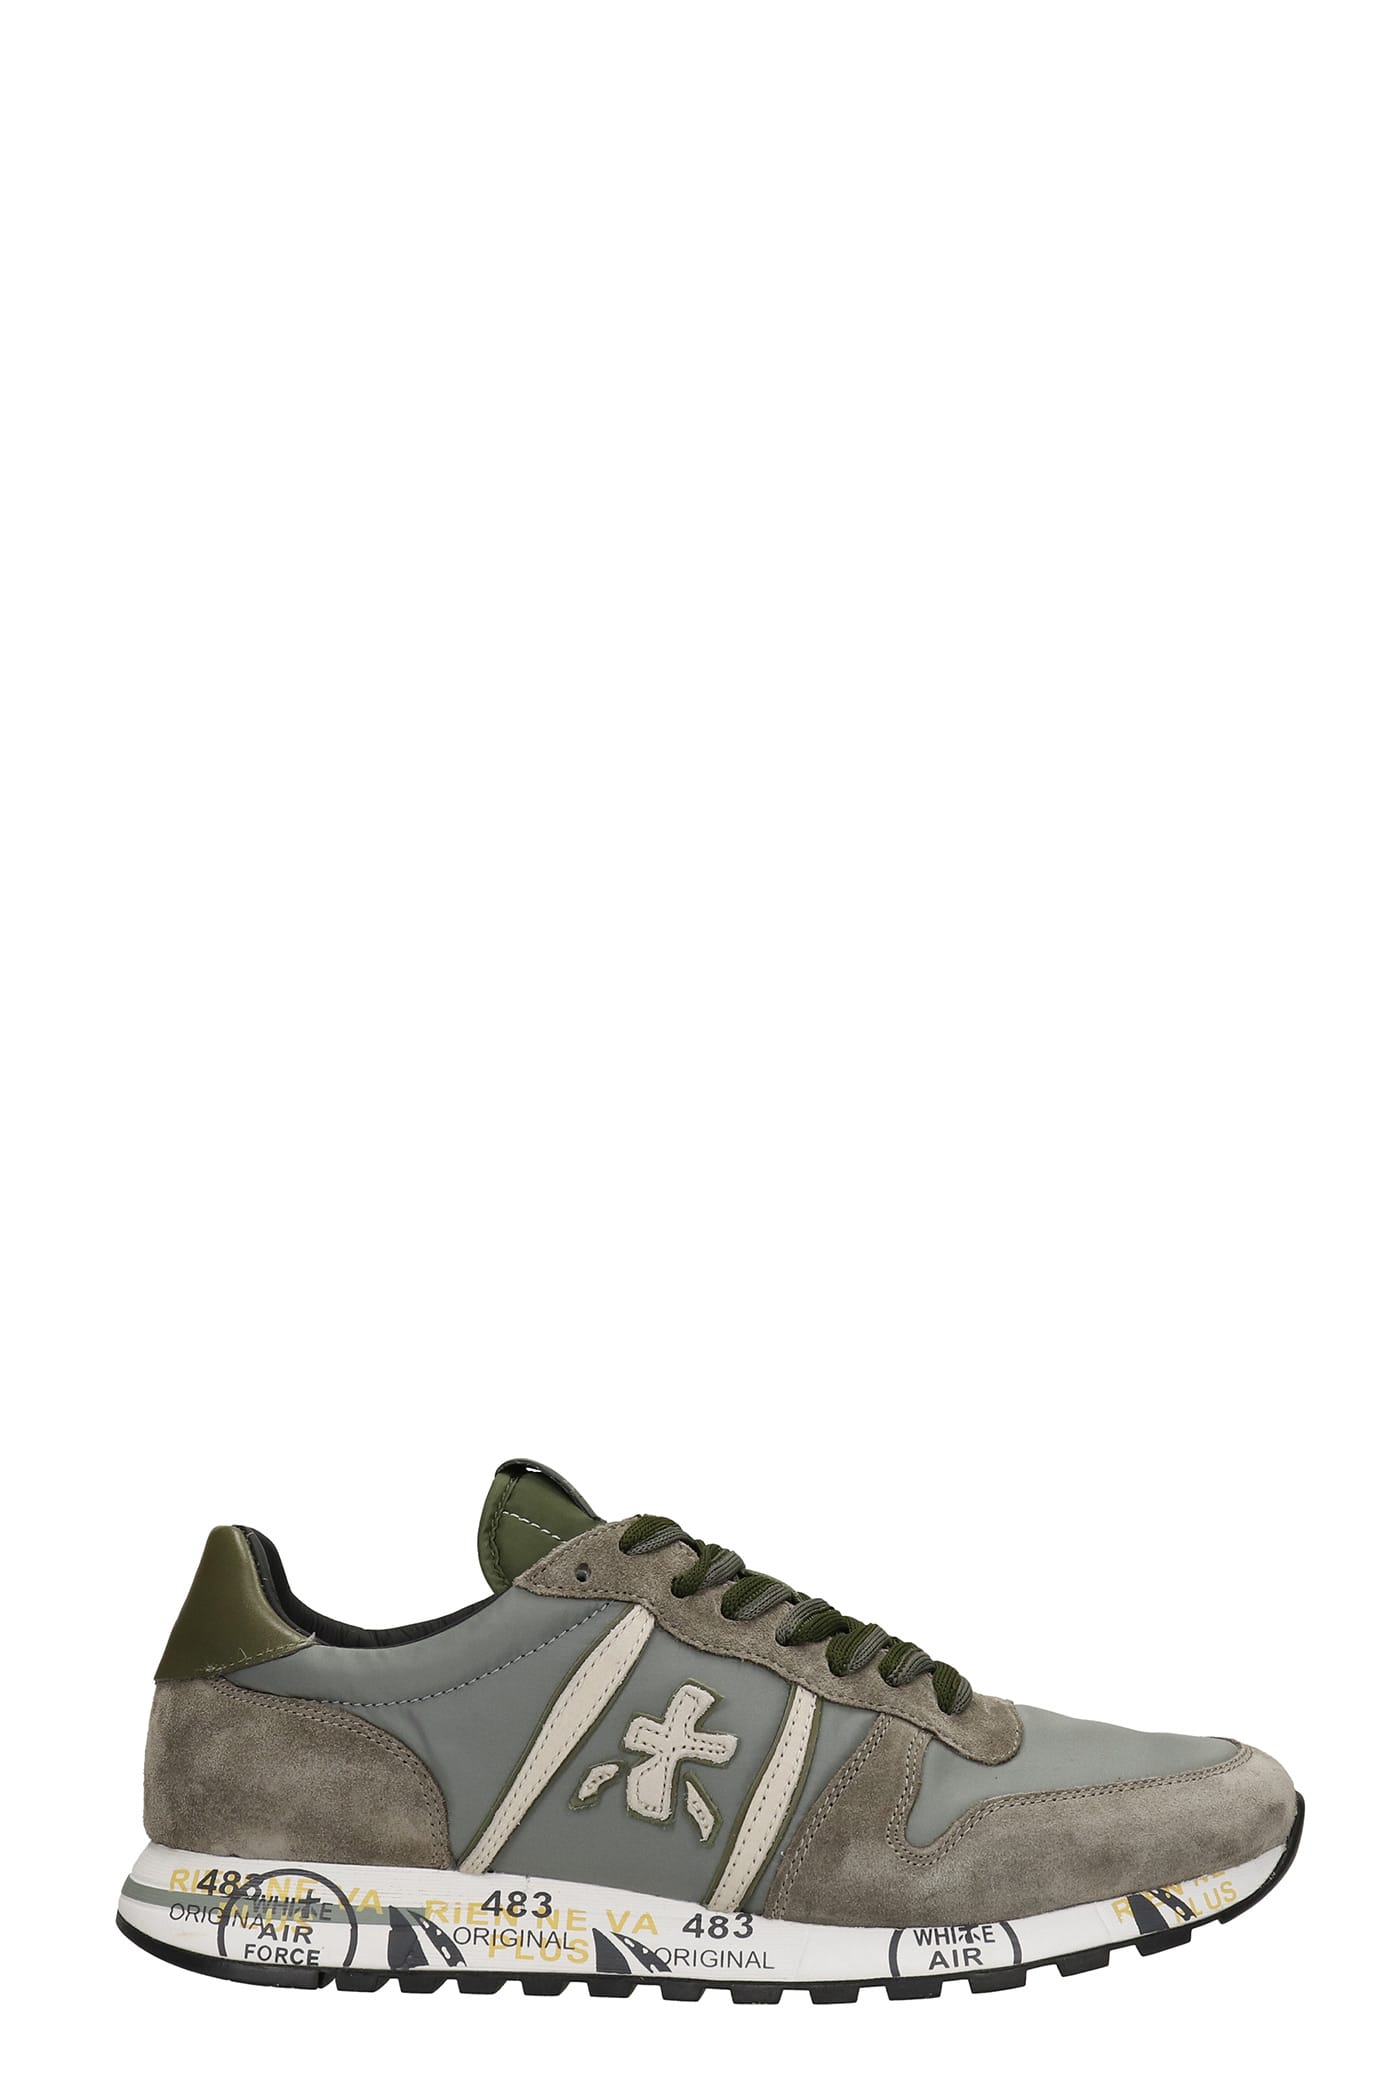 Premiata Eric Sneakers In Grey Nylon